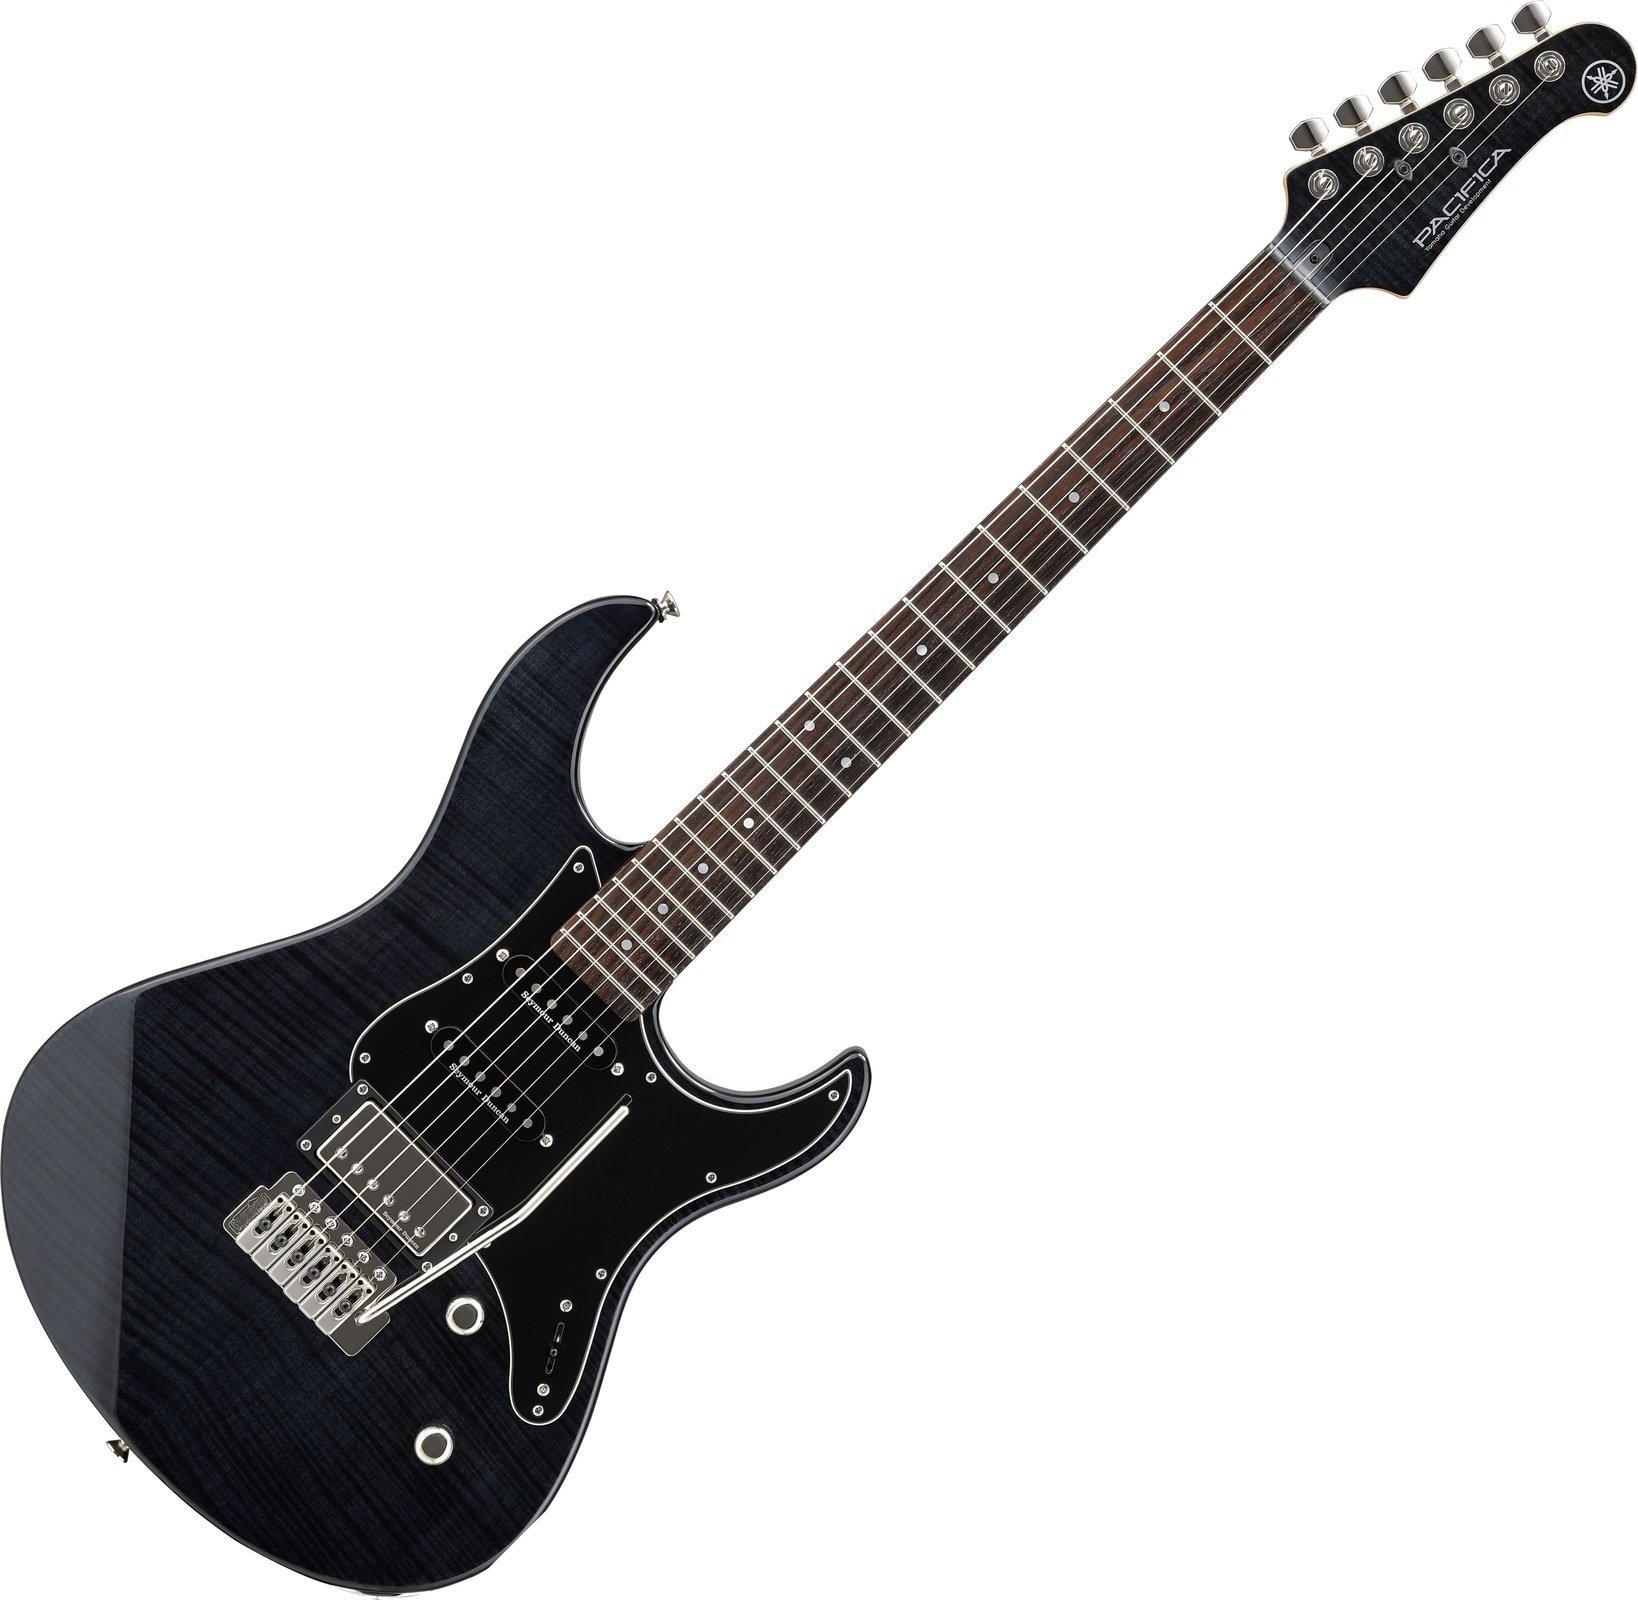 Elektriska gitarrer Yamaha Pacifica 612V Translucent Black